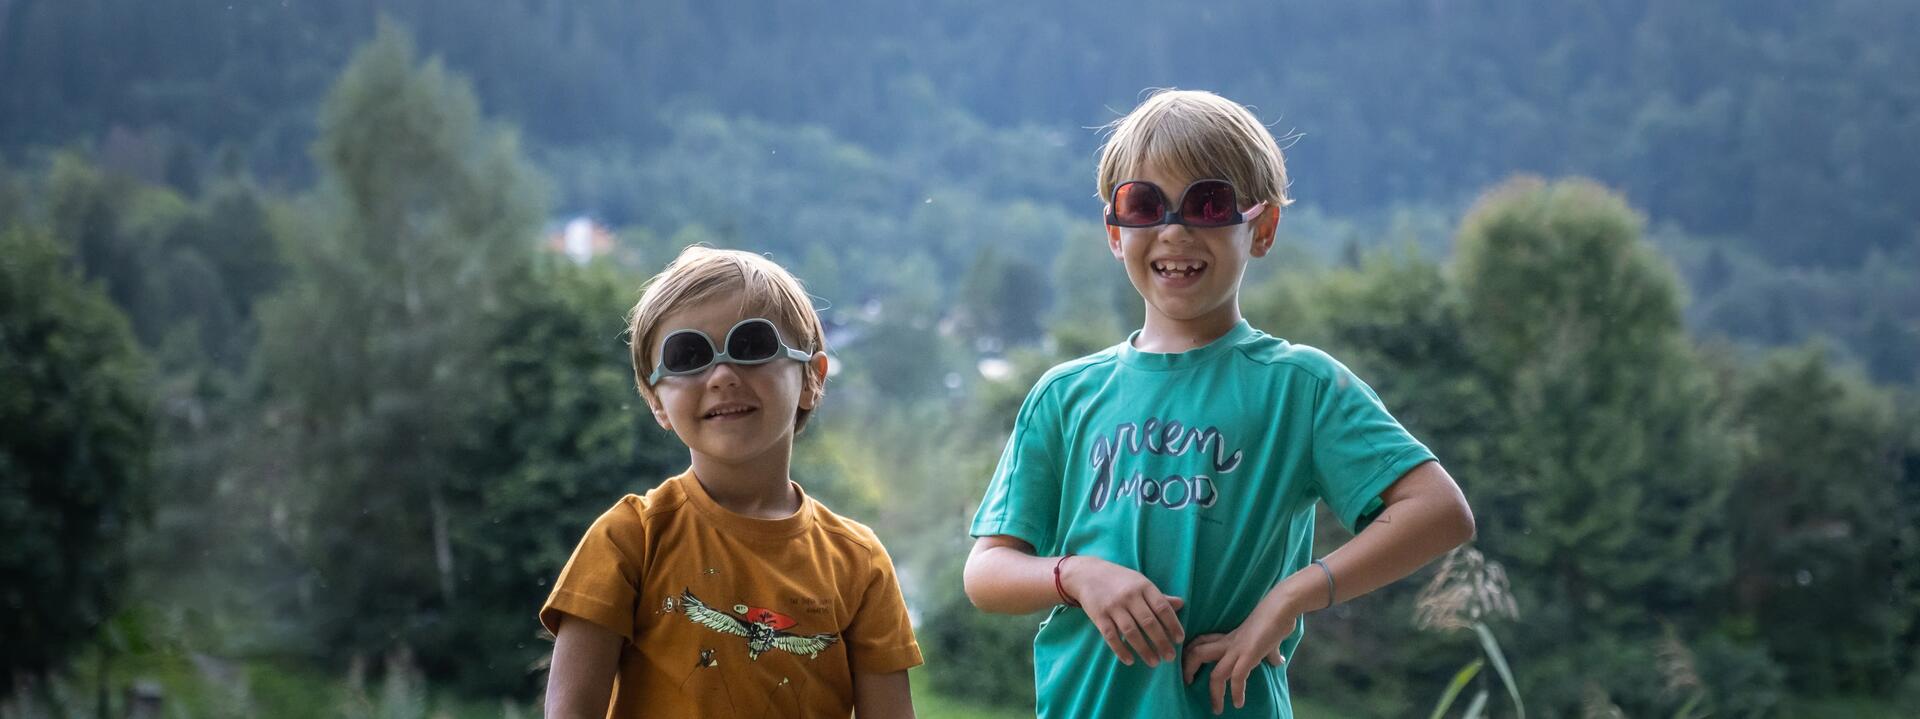 Choisir des lunettes de soleil pour mon enfant - titre